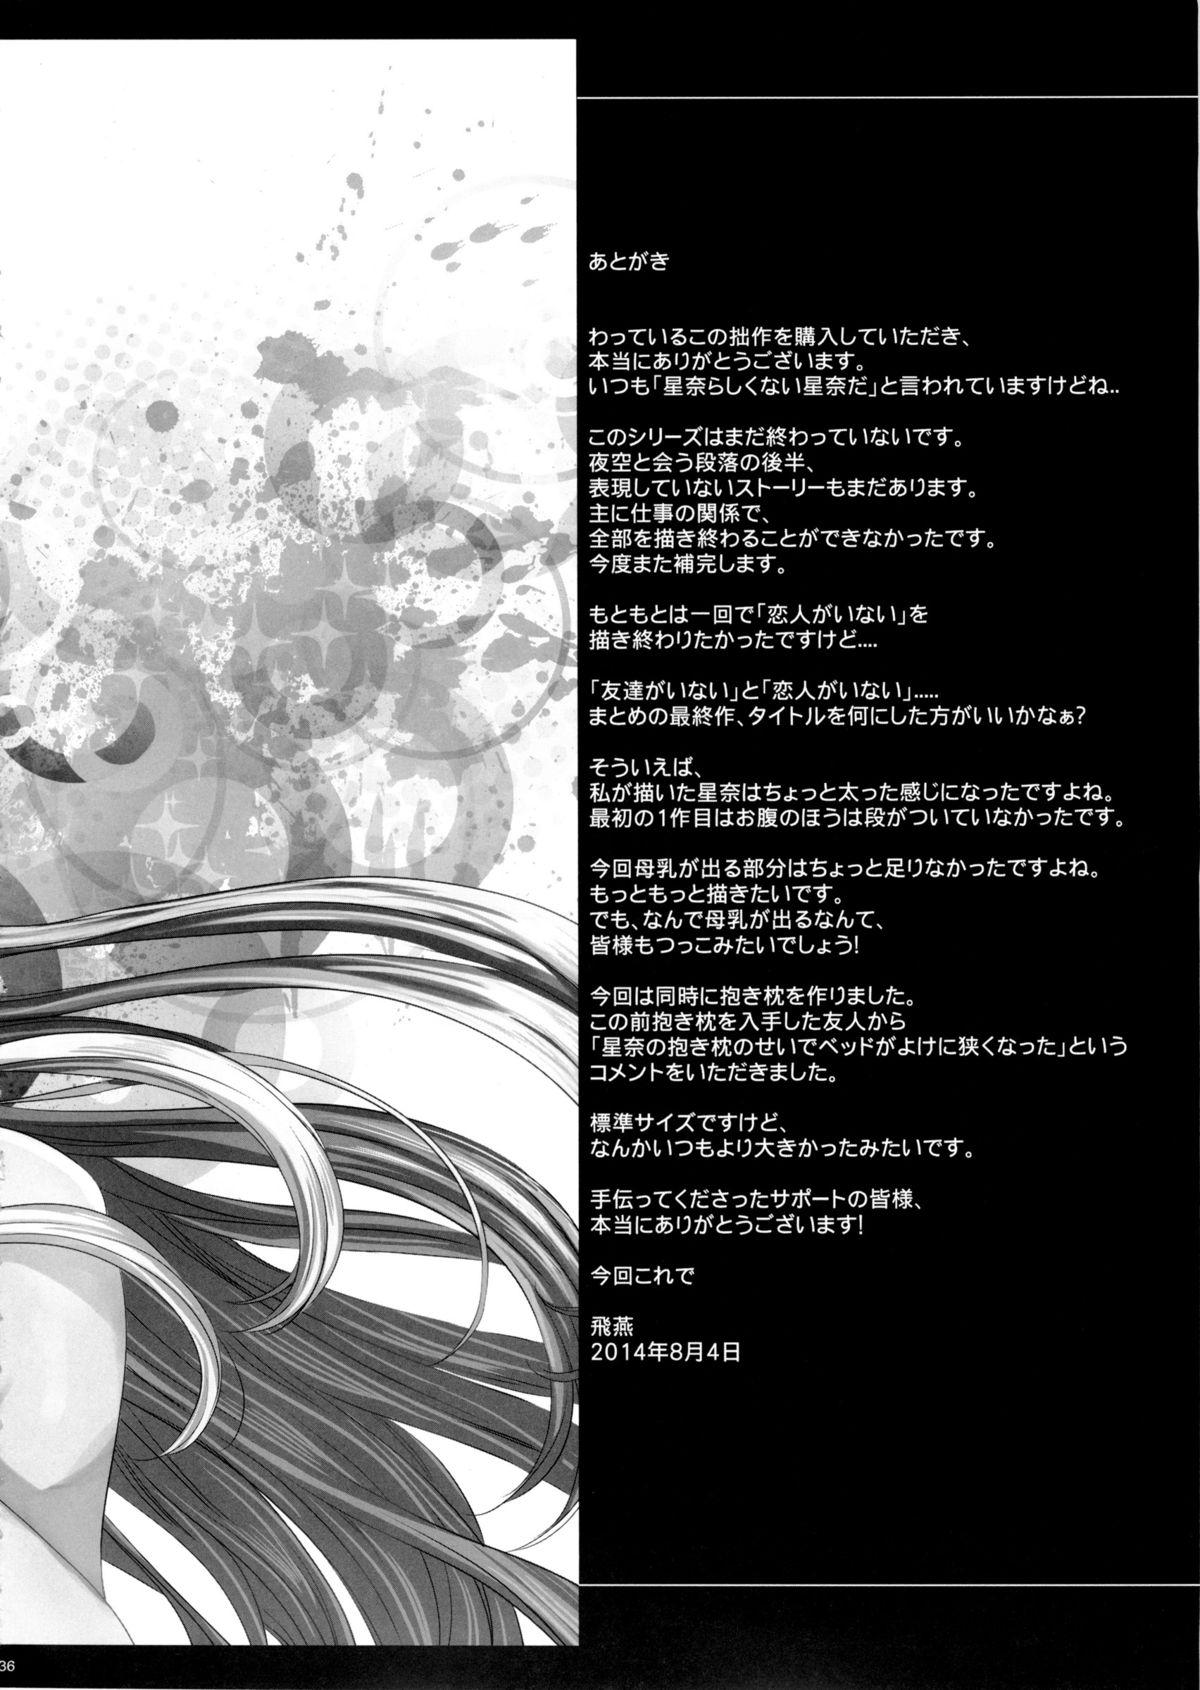 Jerking Off Sena 29sai Koibito ga Inai 2 - Boku wa tomodachi ga sukunai Sexcam - Page 35